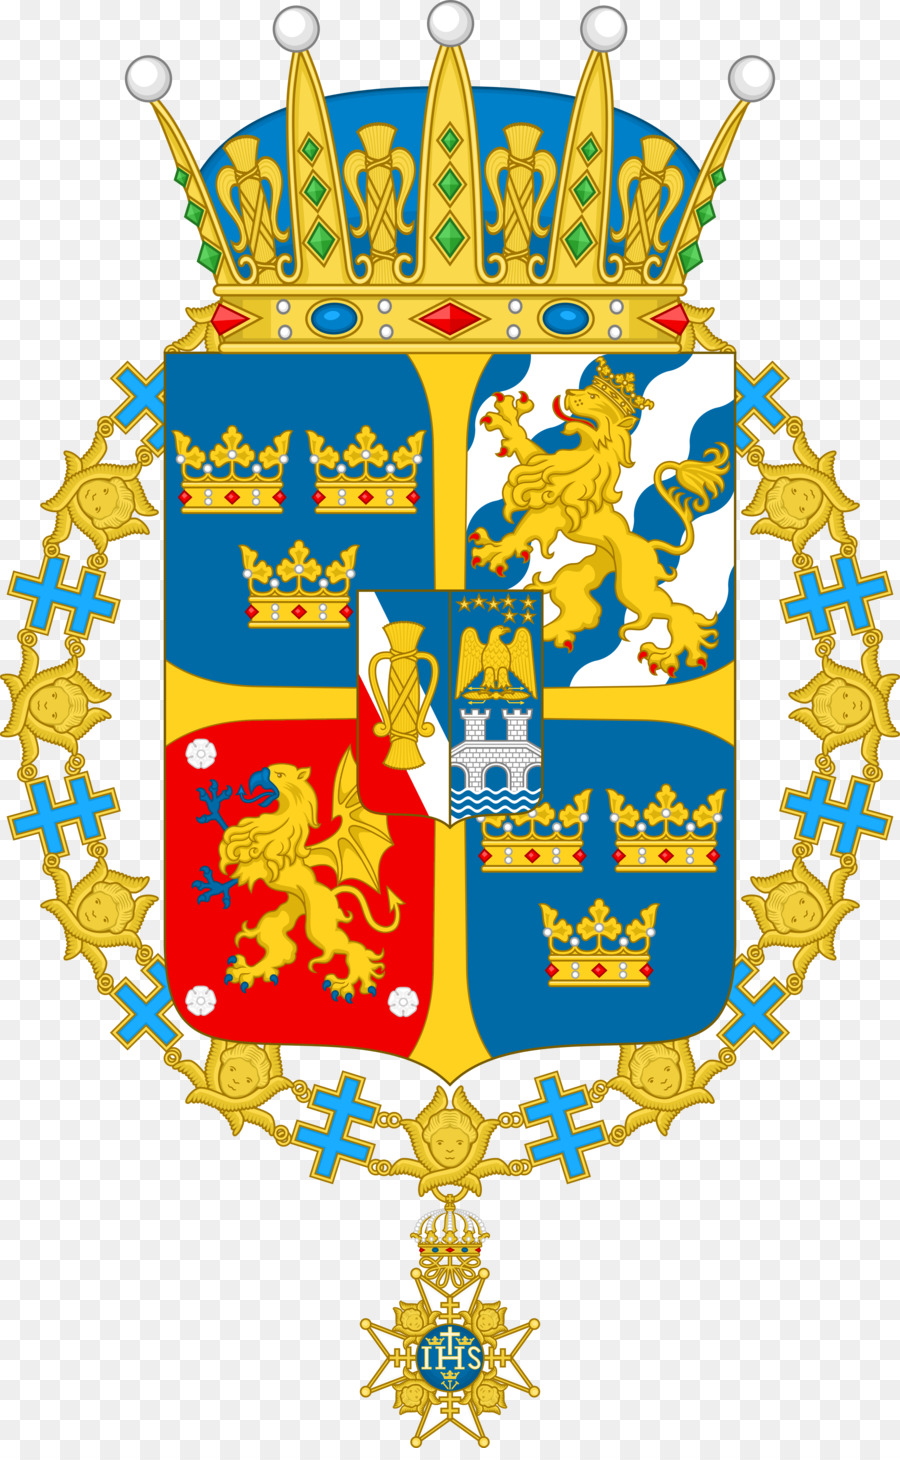 Prince of Wales königliche Hoheit Reihenfolge des Hosenbandordens Wappen von Schweden - andere